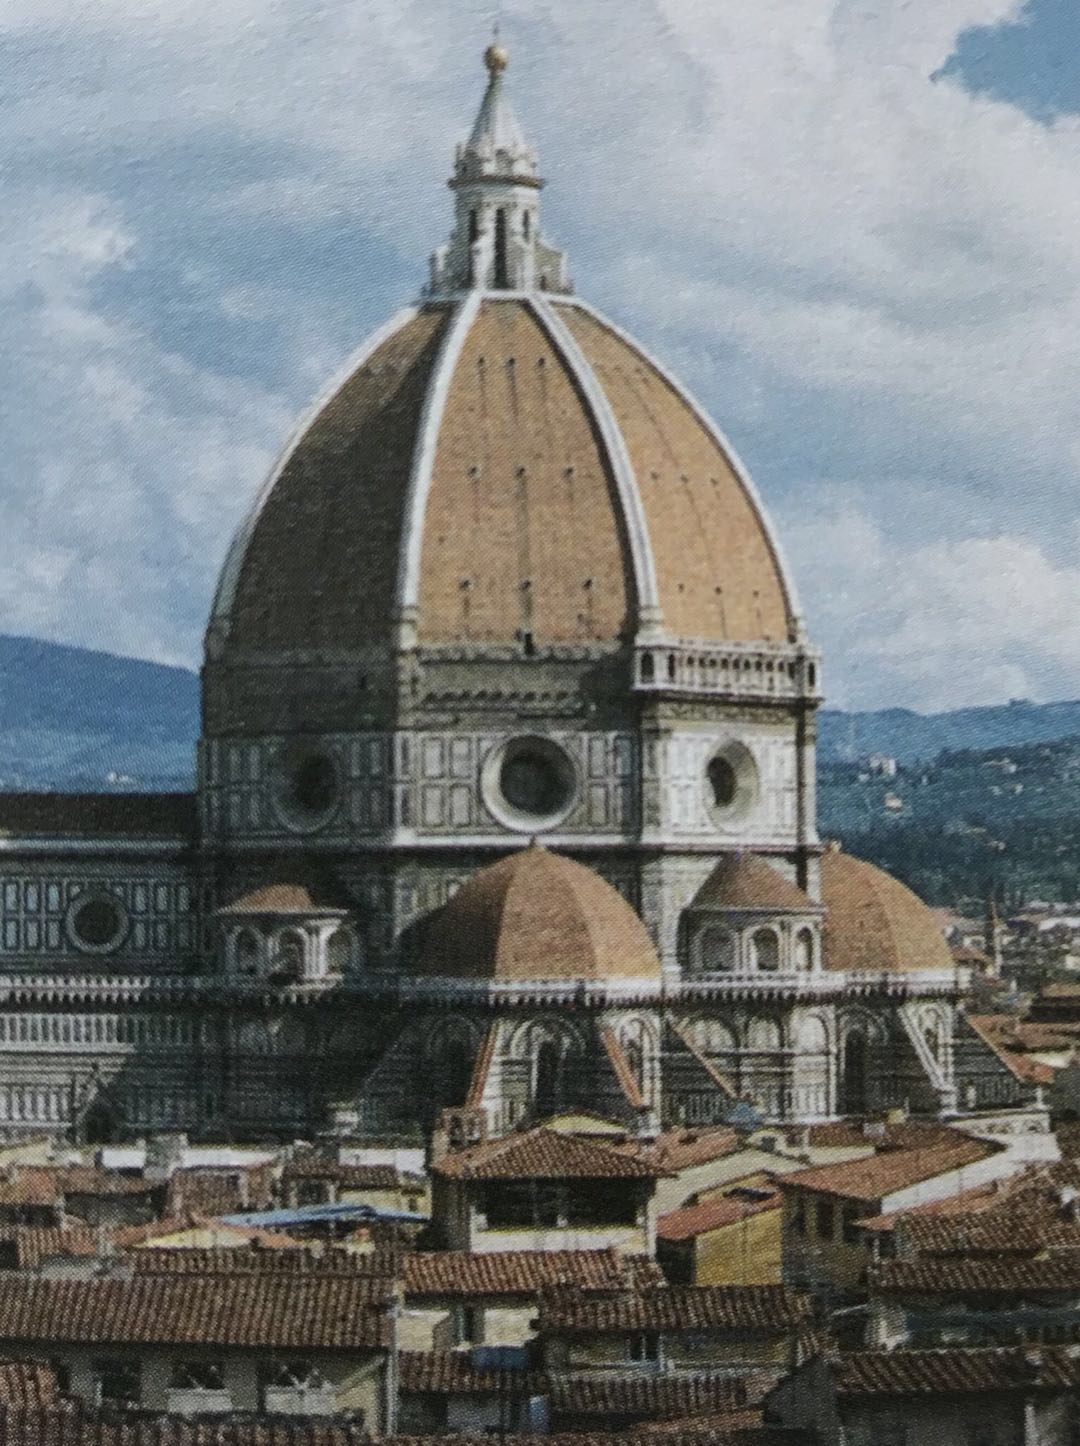 佛罗伦萨大教堂设计师图片